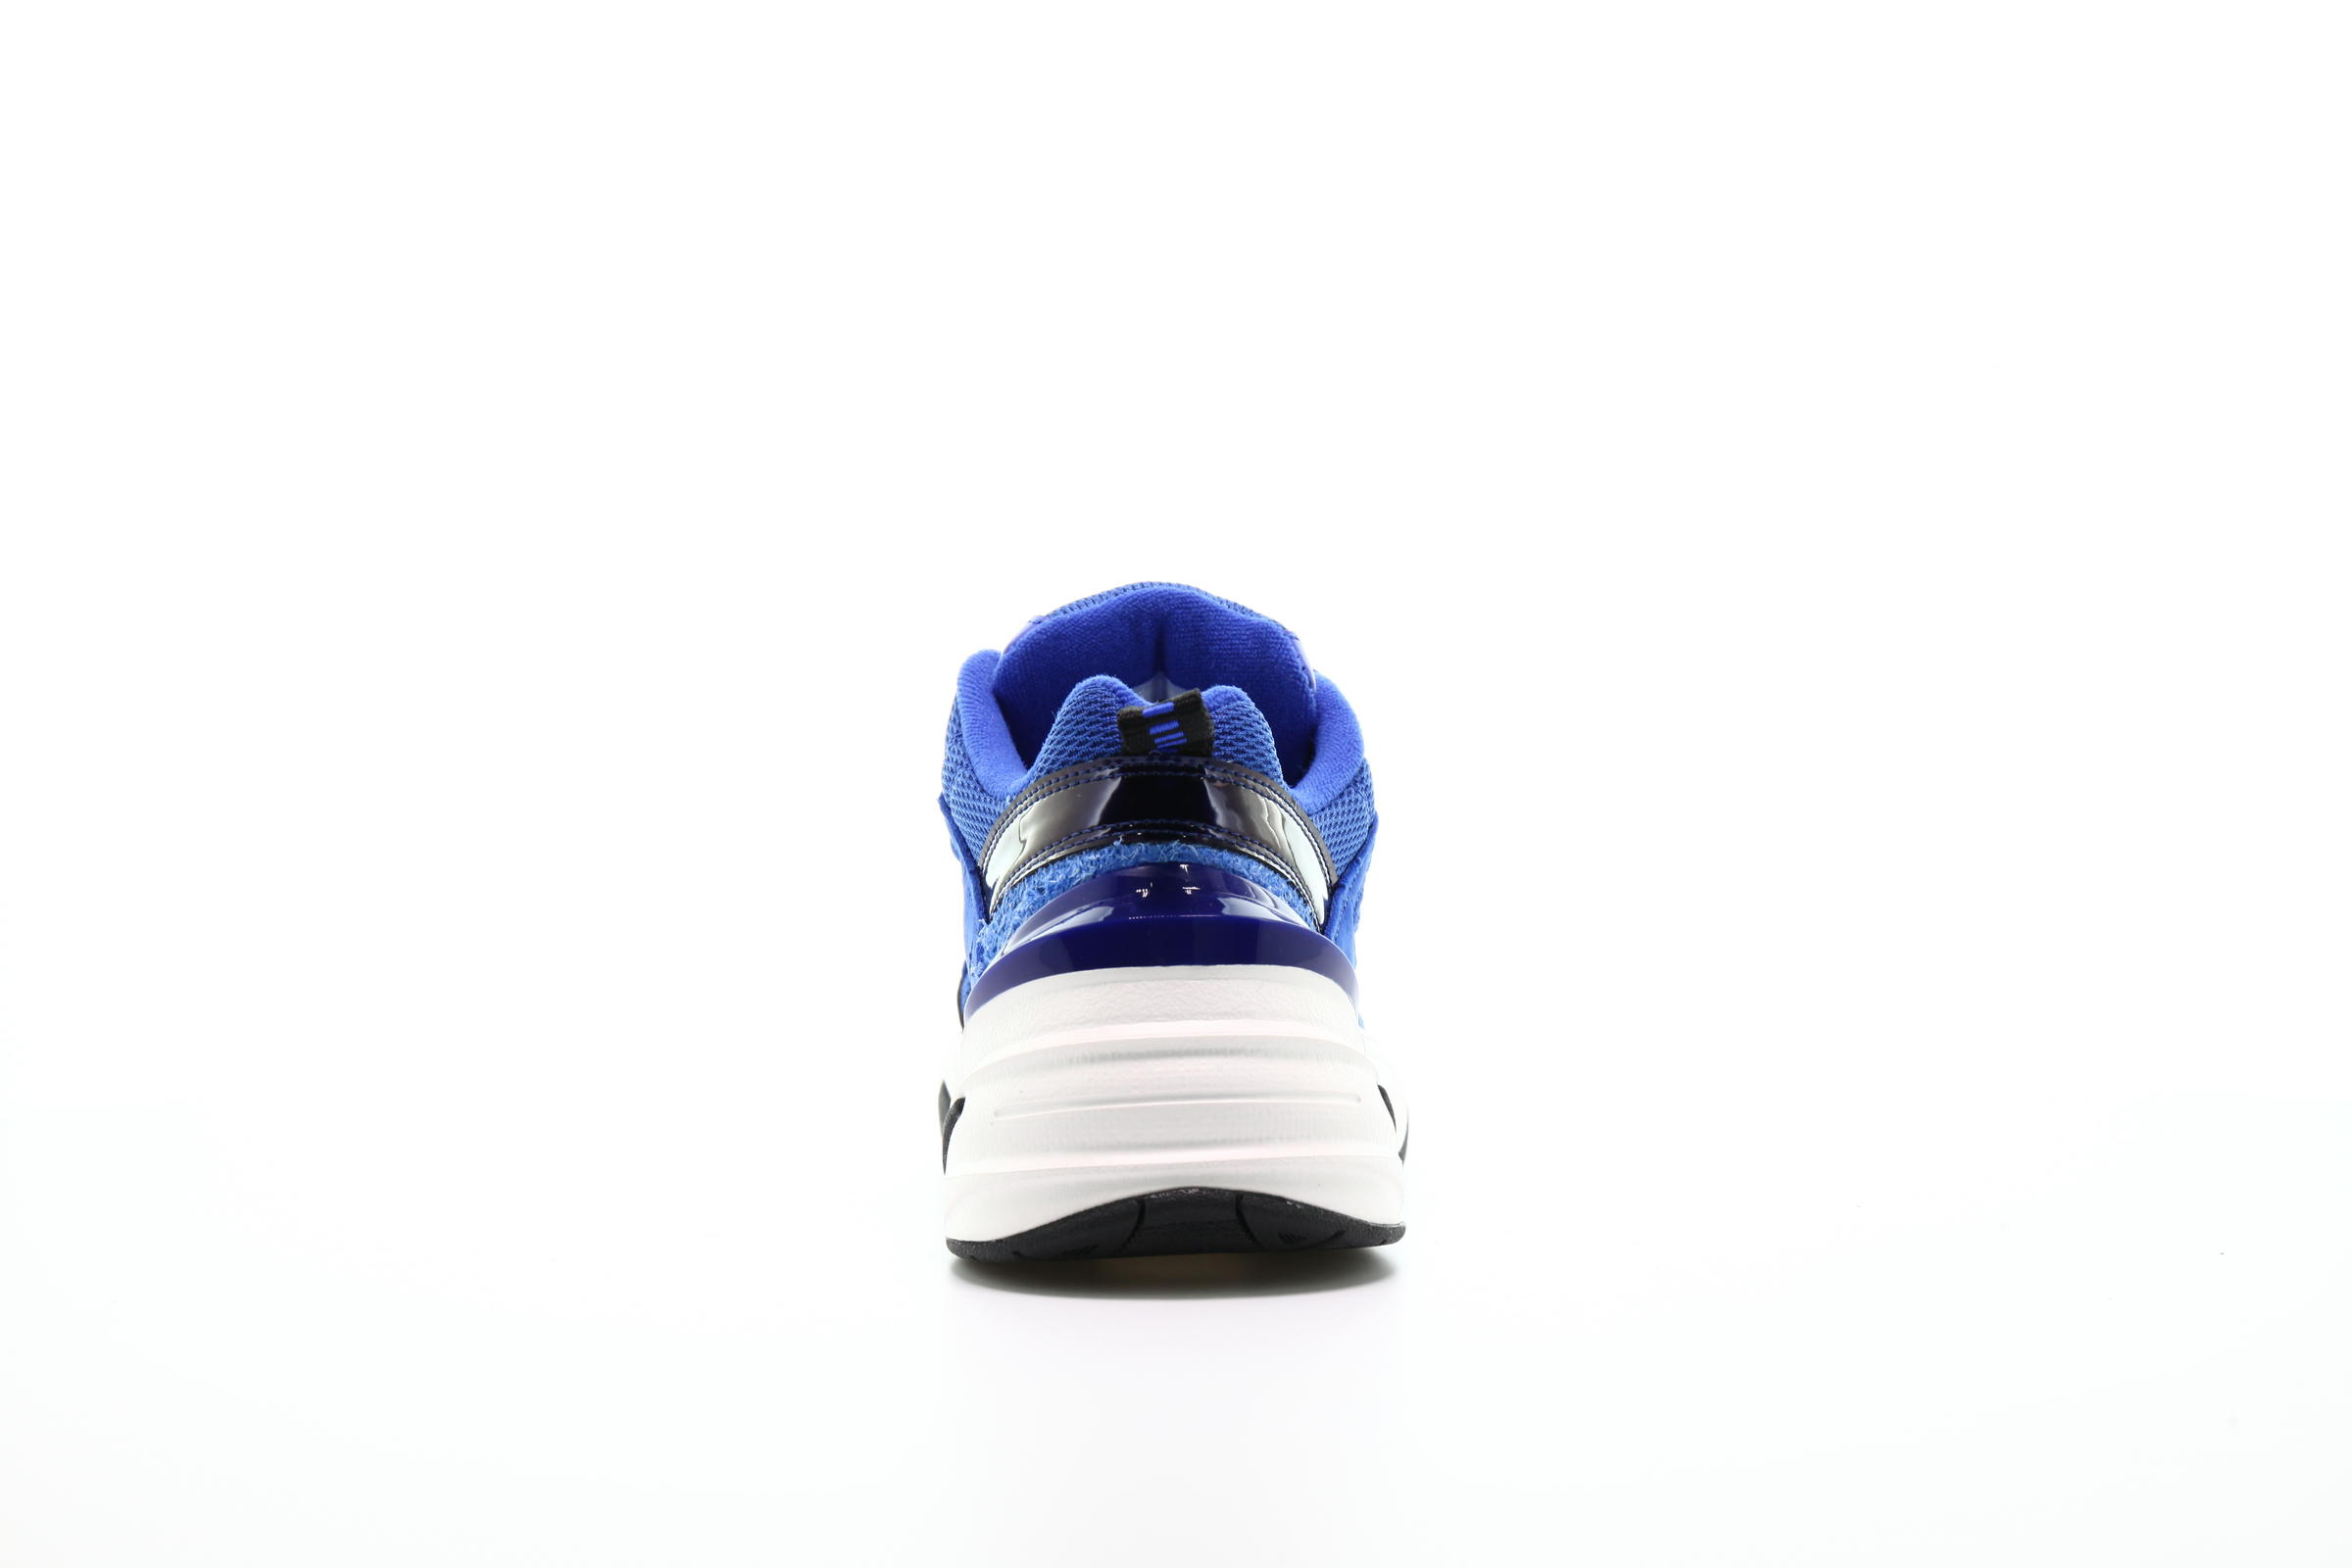 Nike Wmns M2k Tekno "Racer Blue"